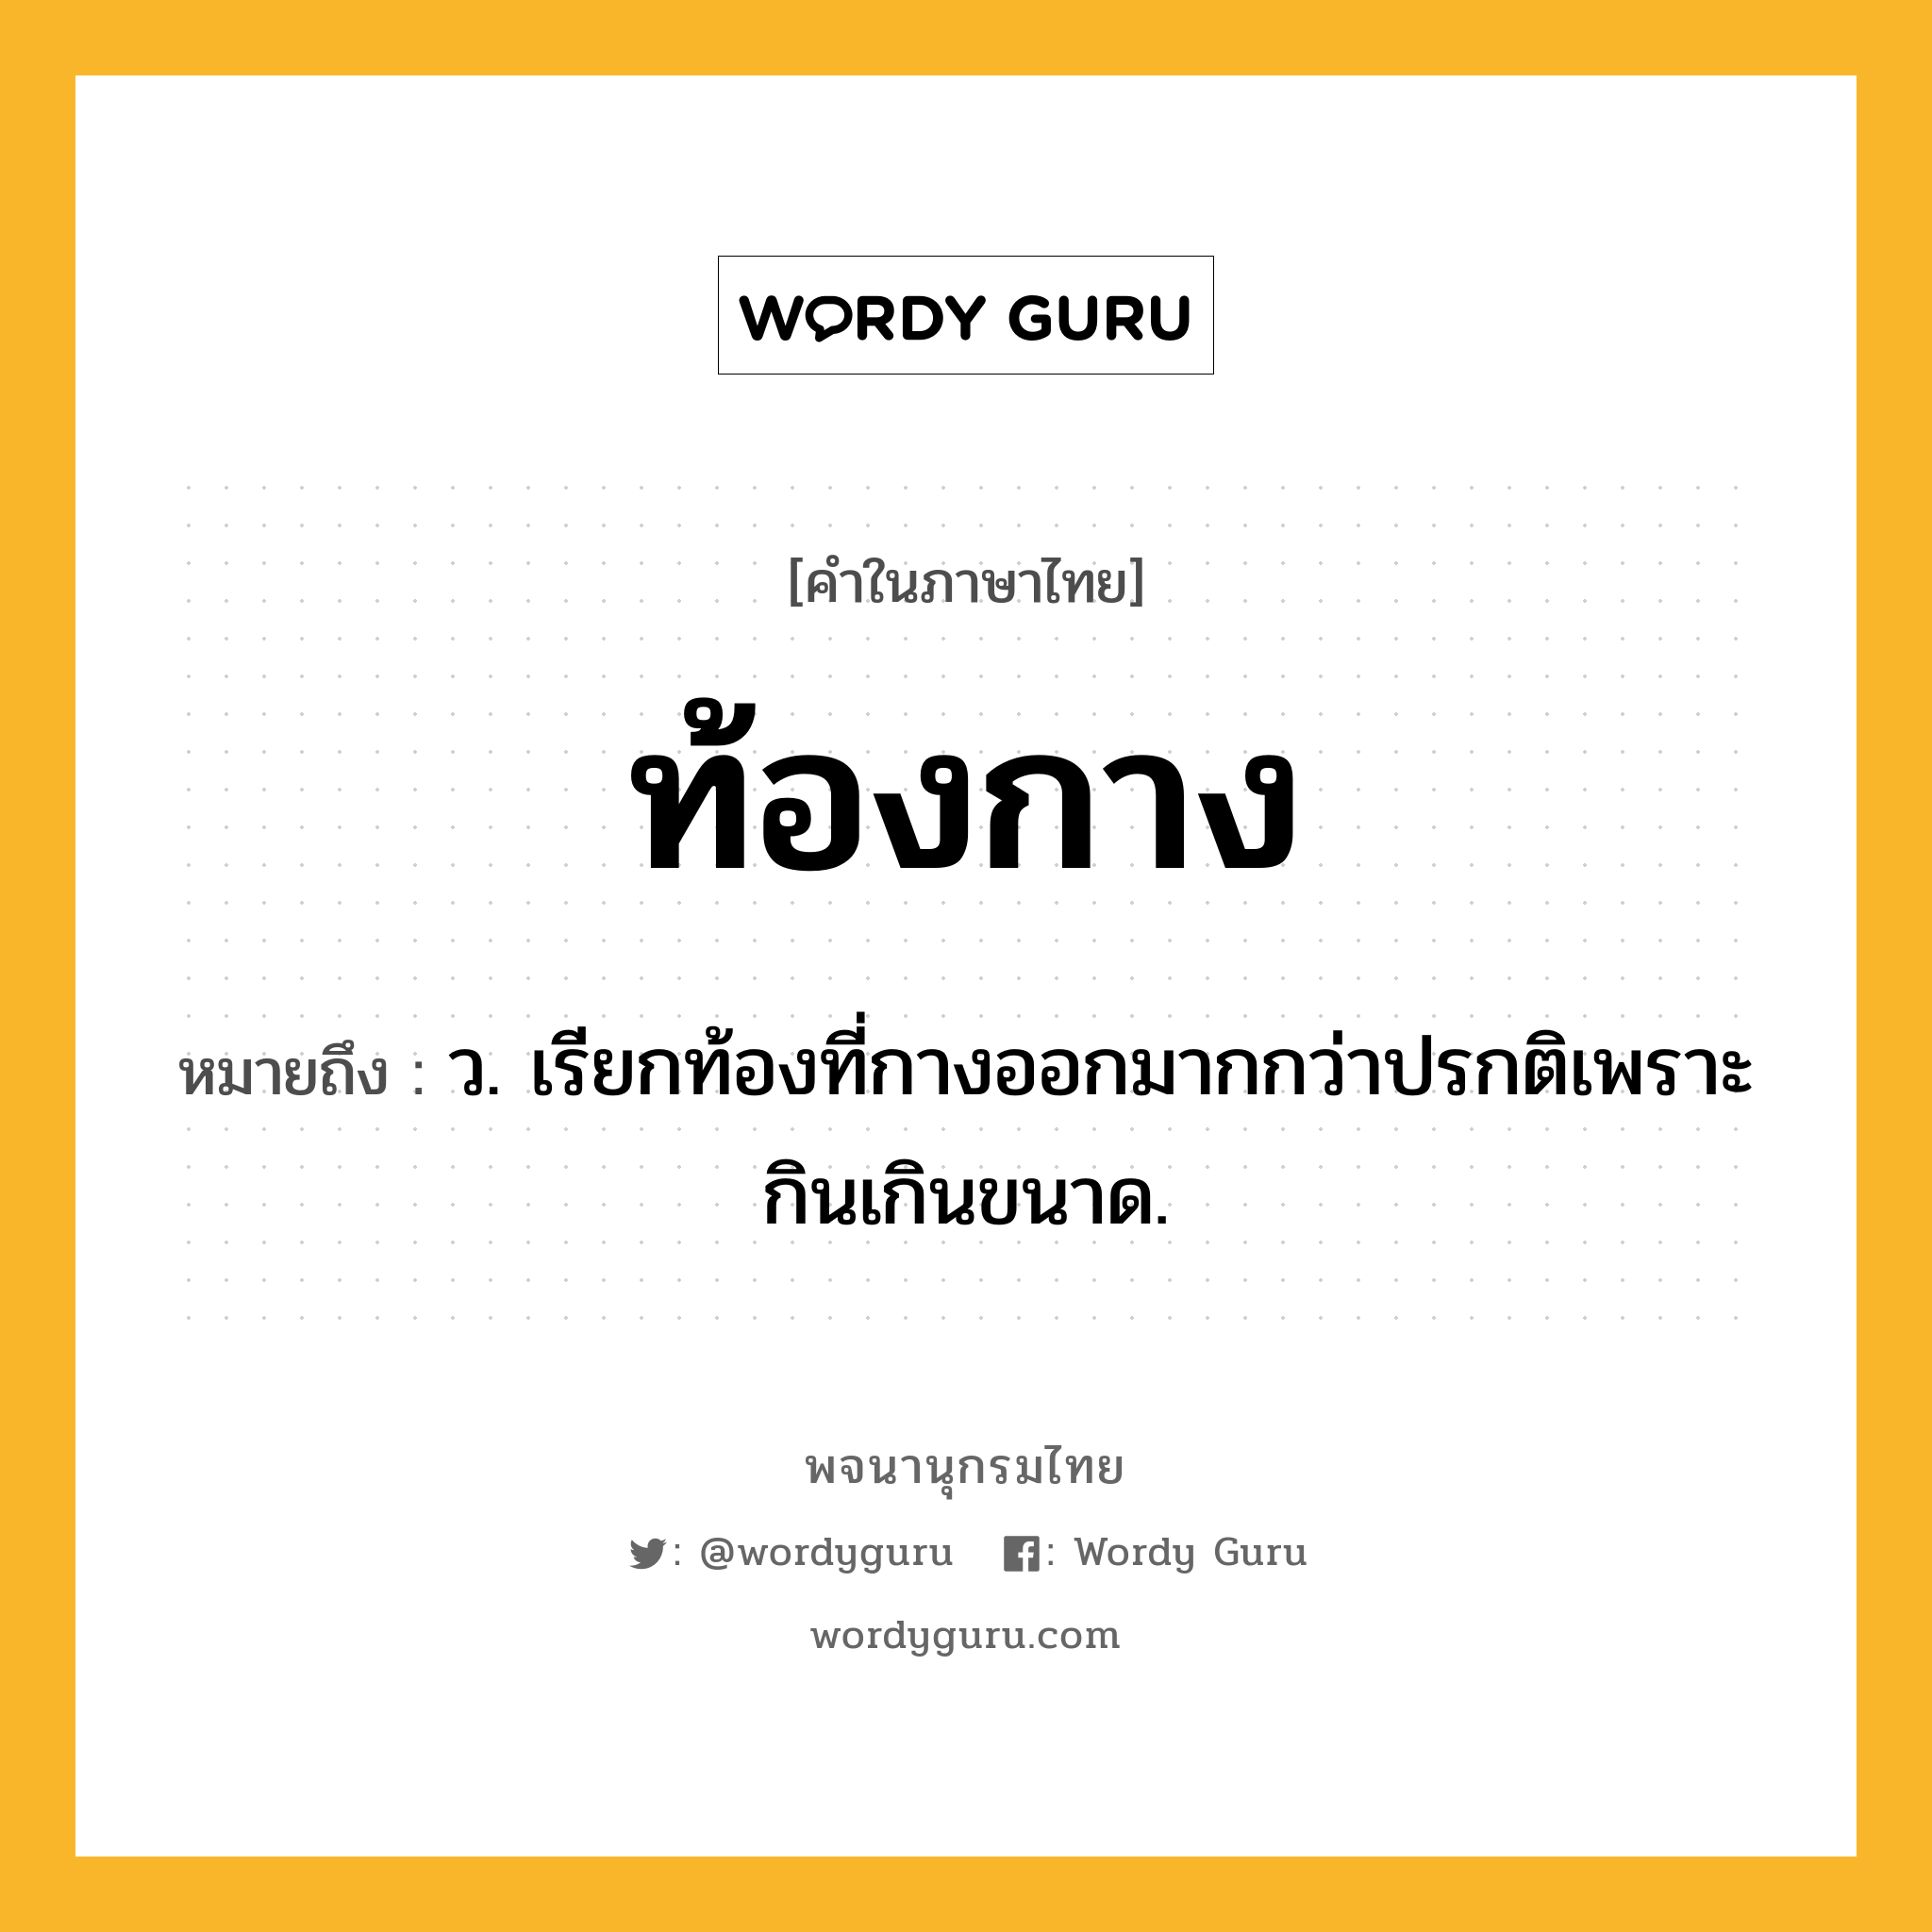 ท้องกาง หมายถึงอะไร?, คำในภาษาไทย ท้องกาง หมายถึง ว. เรียกท้องที่กางออกมากกว่าปรกติเพราะกินเกินขนาด.